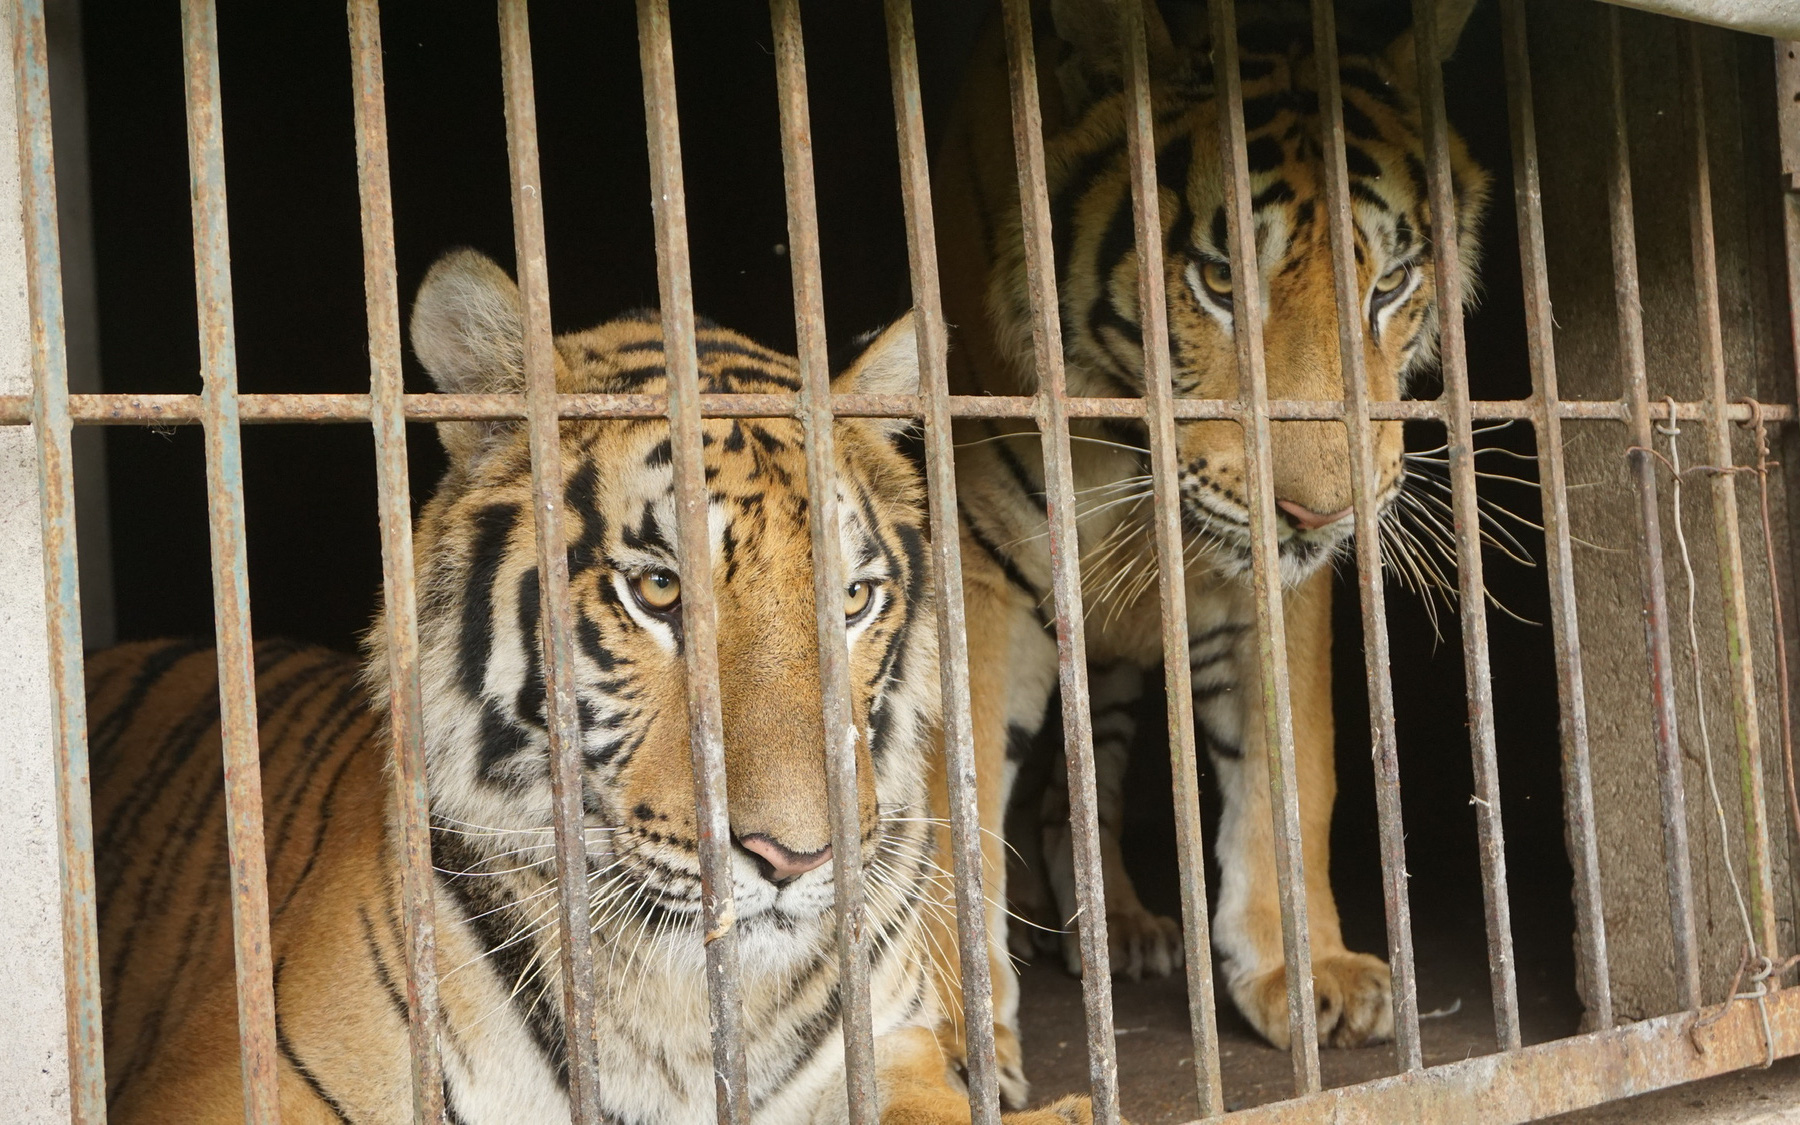 Vụ “thu giữ” hổ ở Nghệ An: Cần nhìn toàn bộ vấn đề, không chỉ dừng lại ở câu chuyện hổ chết